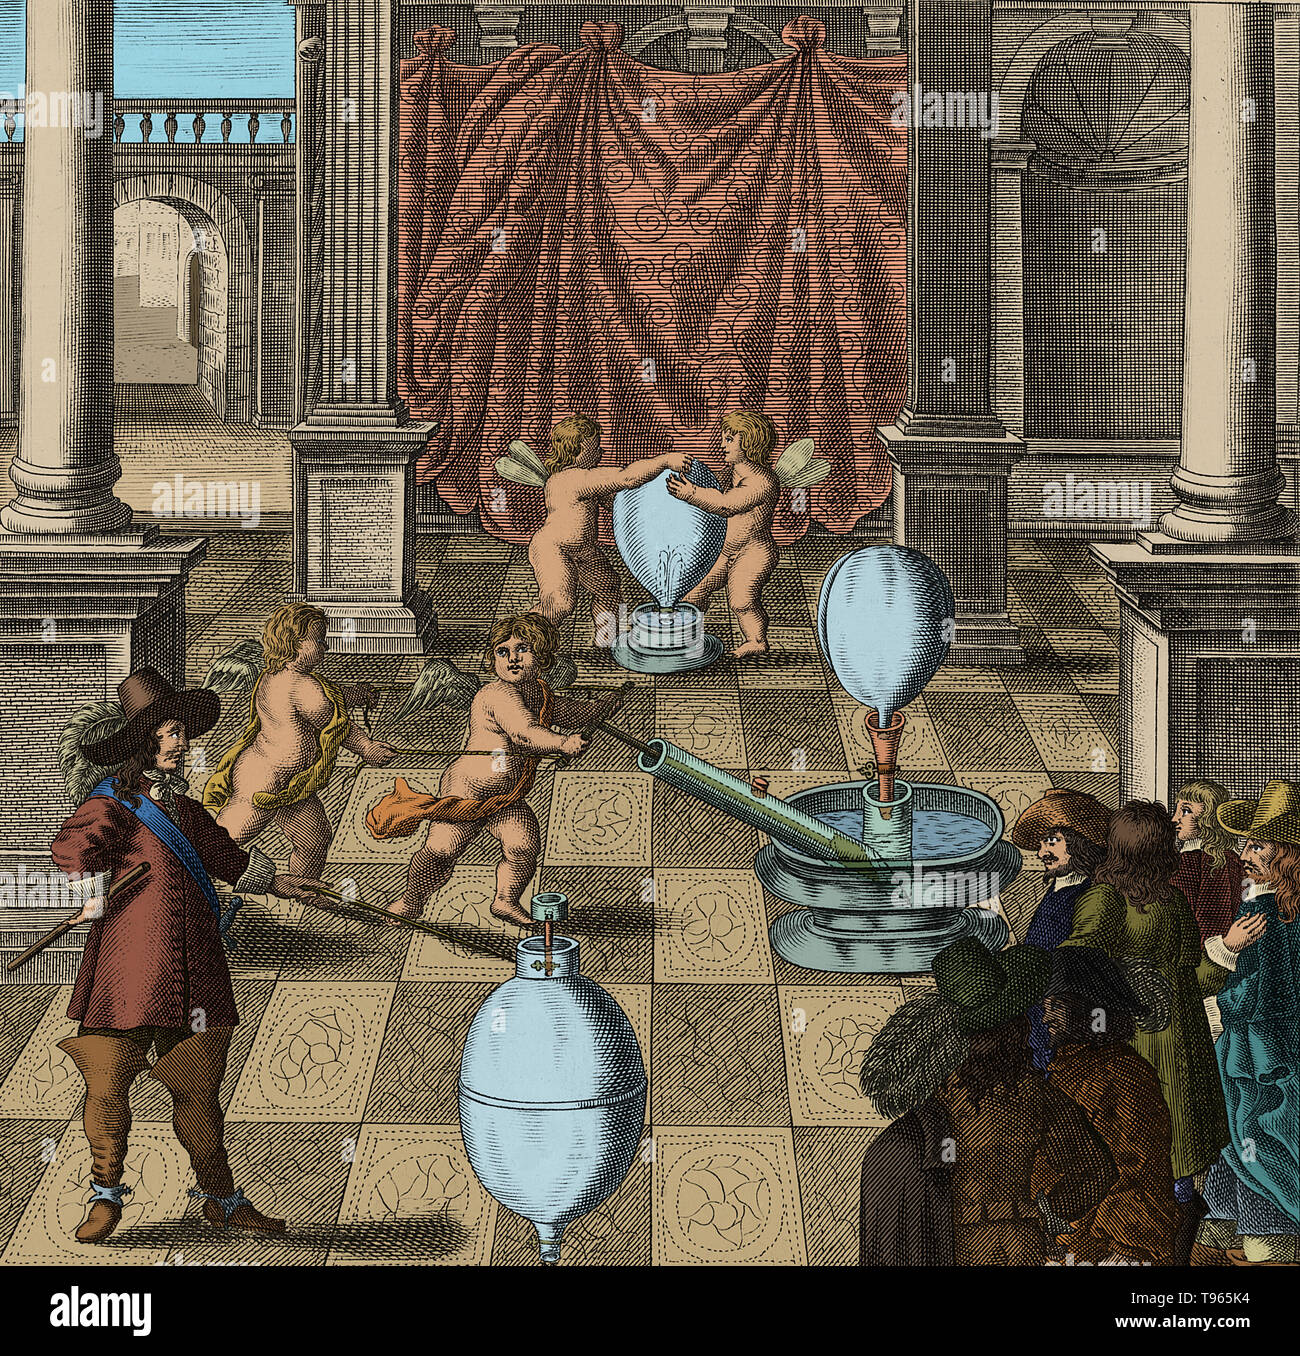 Farbe verbesserte Abbildung der Otto-von-Guericke-Universität und seine Luftpumpe. Von "echanica - Hydraulico-pneumatica" von Kaspar Schott. Veröffentlicht, 1657. Otto-von-Guericke-Universität (1602-1686) war ein deutscher Wissenschaftler, Erfinder und Politiker. Seine großen wissenschaftlichen Errungenschaften waren die Errichtung der Physik der Staubsauger, die Entdeckung einer experimentellen Methode für deutlich, elektrostatische Abstoßung, und sein Eintreten für die Realität der Aktion in einem Abstand und der absoluten Raum. Stockfoto